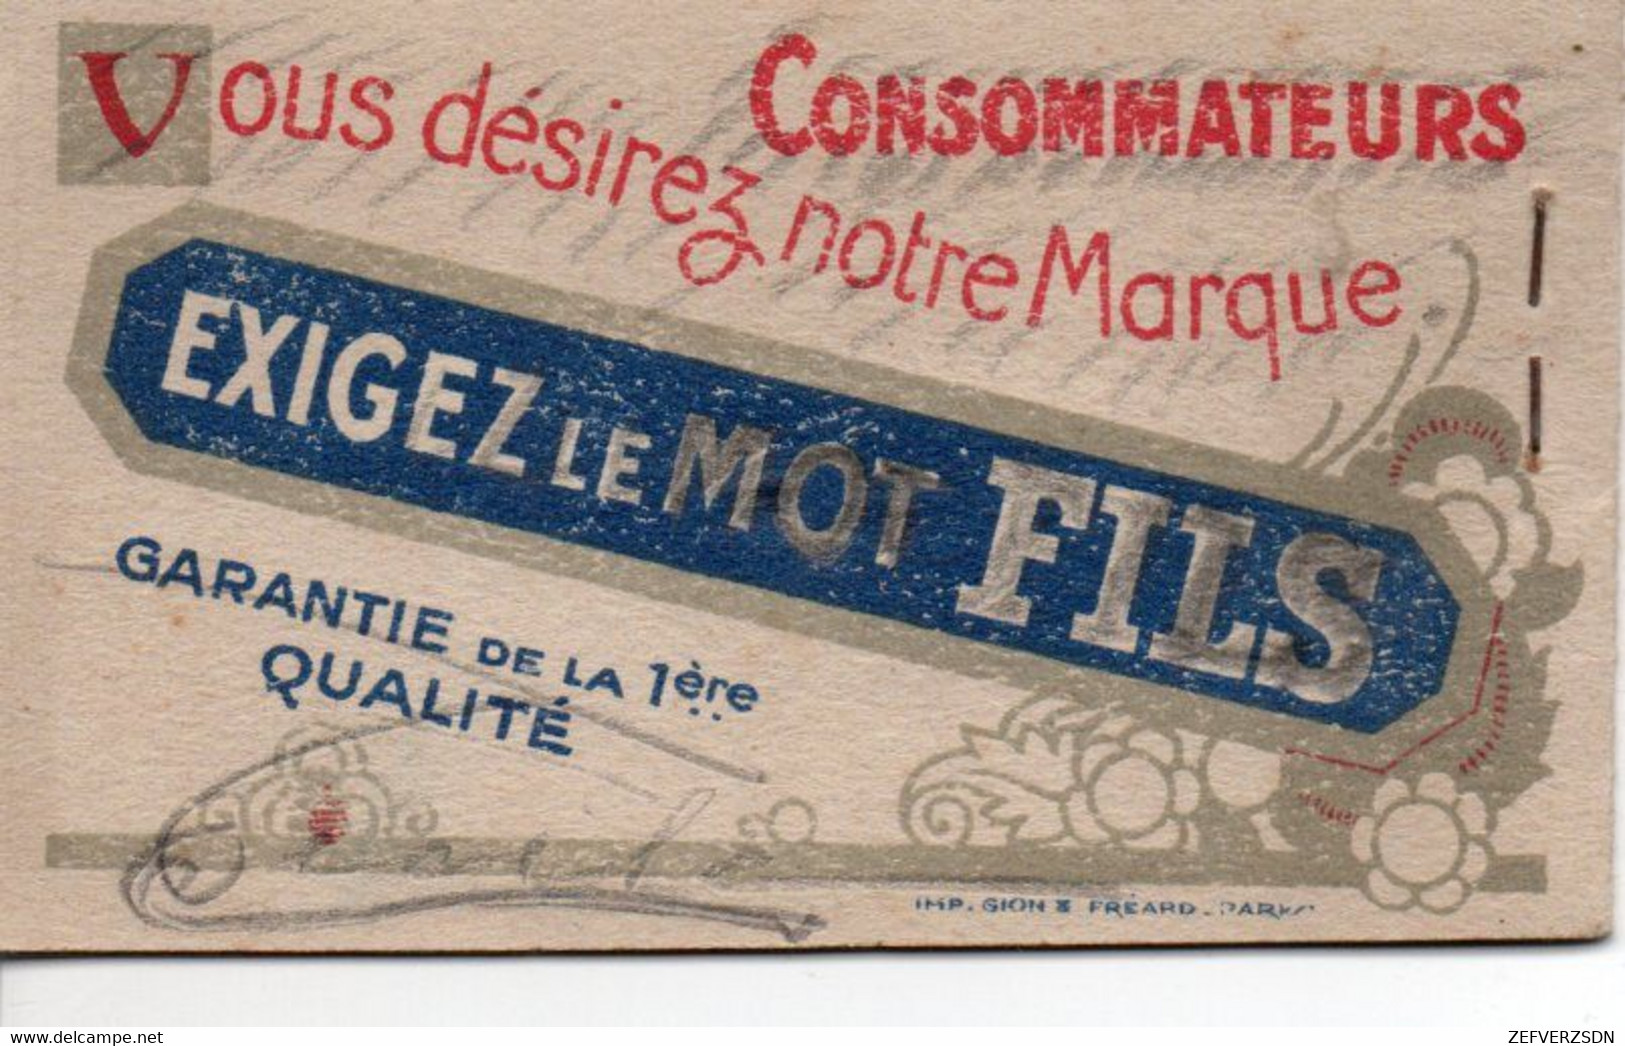 CALENDRIER 1928 PUBLICITE PERNOD PARIS PONTARLIER DOUBS MARSEILLE CARNET PUBLICITAIRE - Publicidad